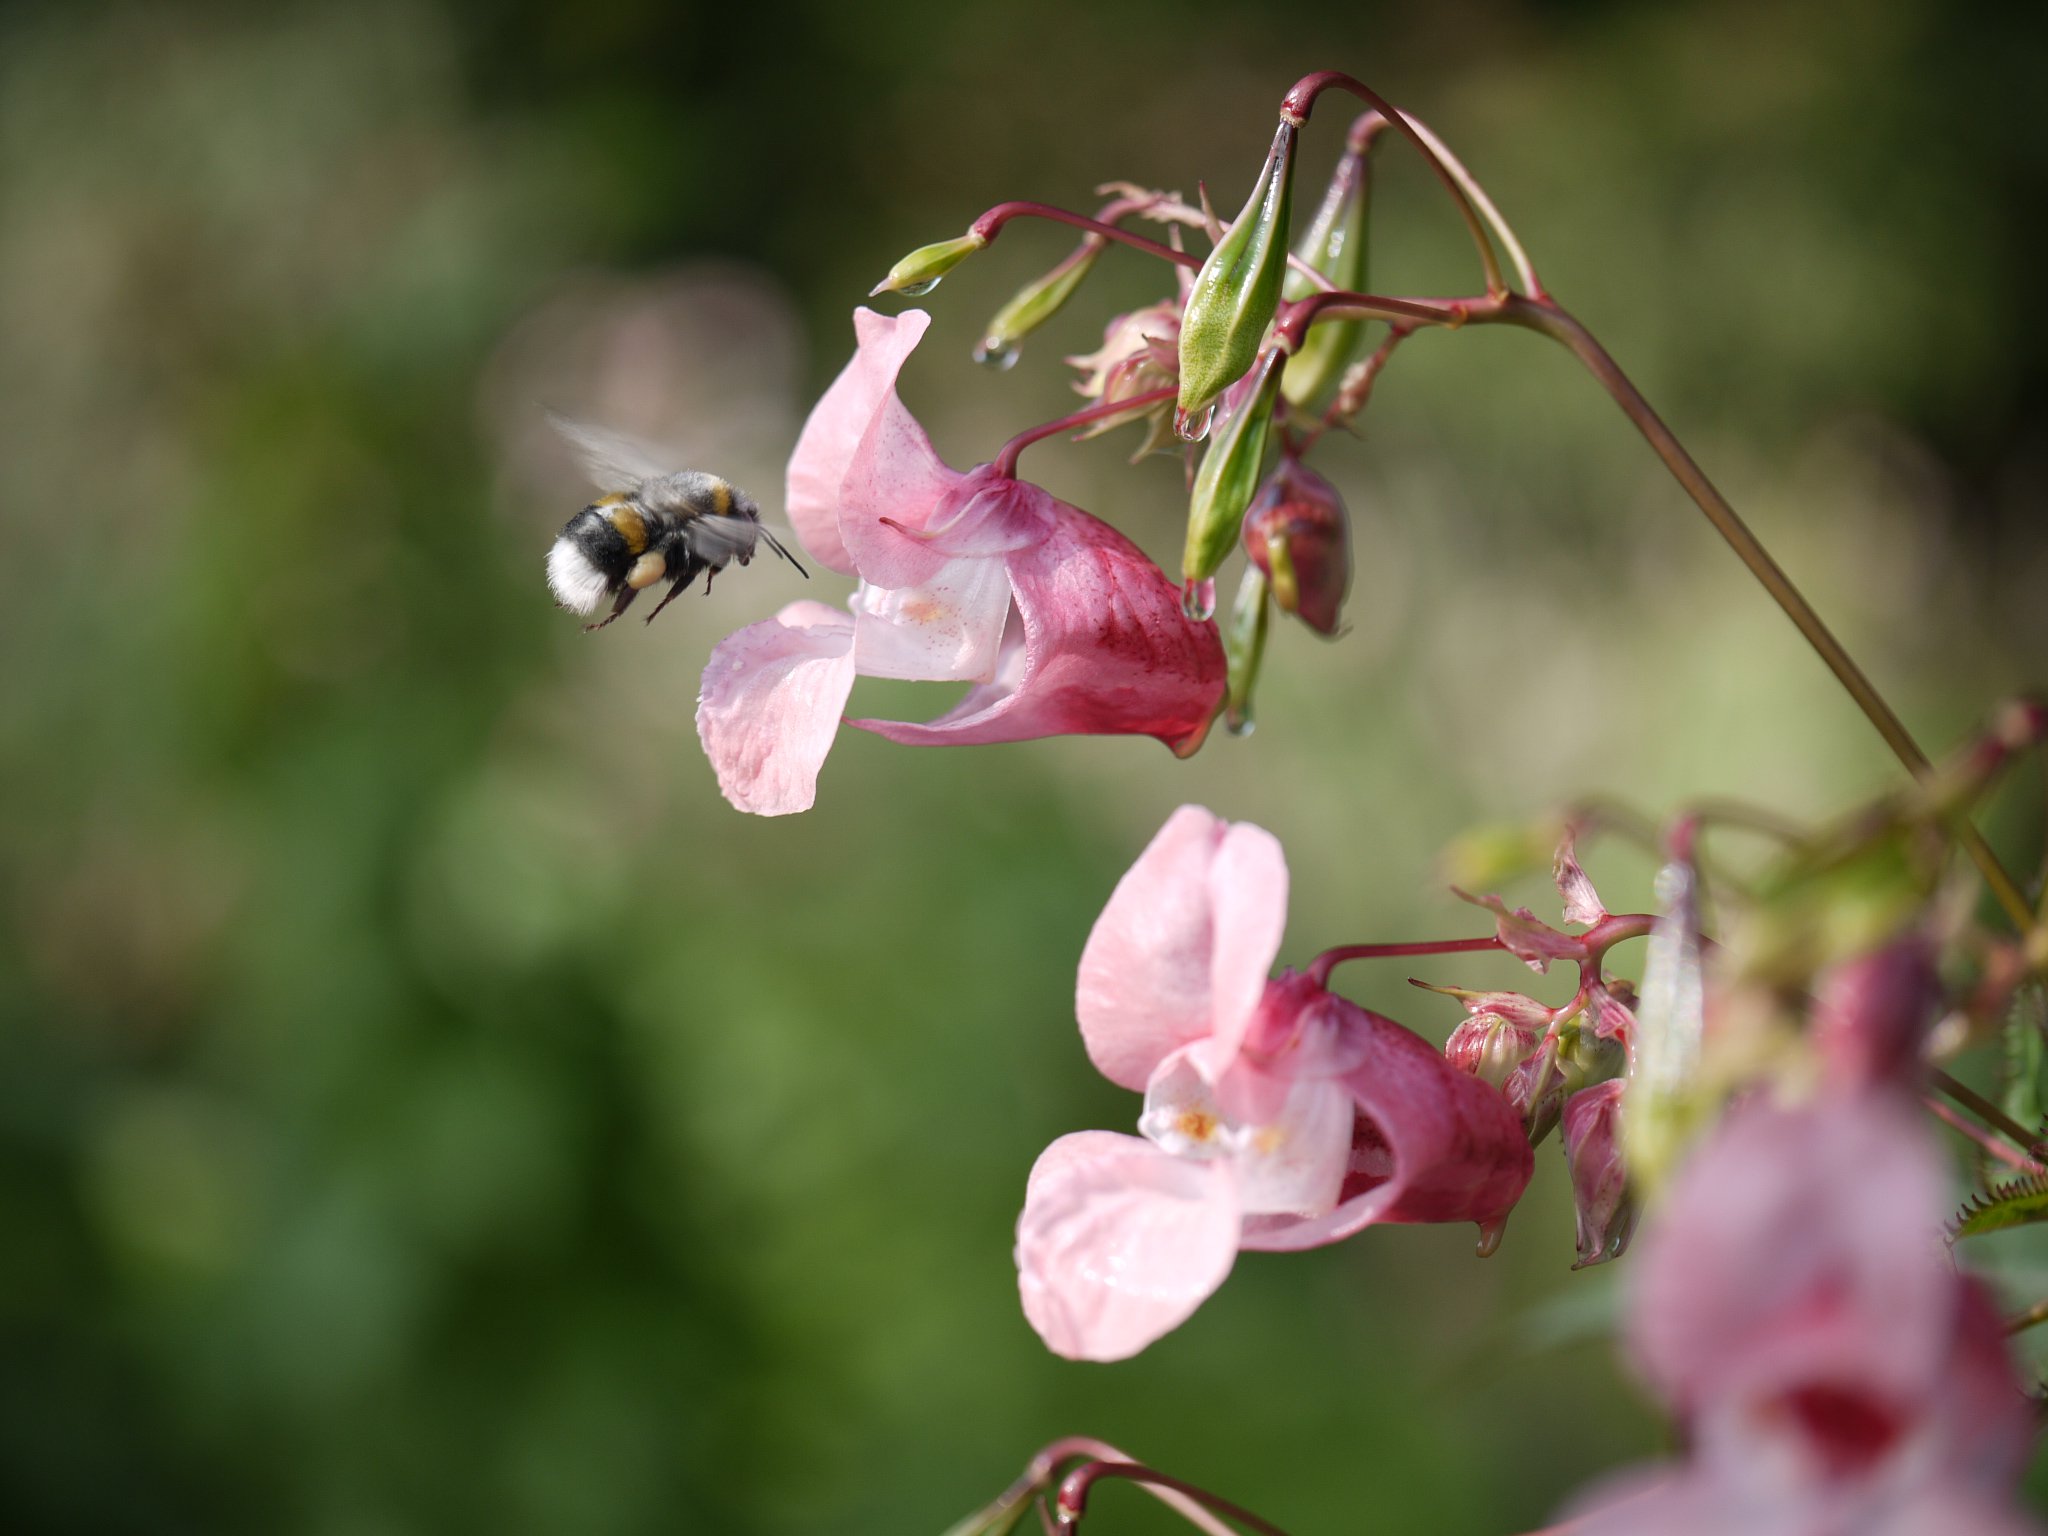 Bijenplant springbalsemien of reuzenbalsemien voortaan ongewenst in de EU